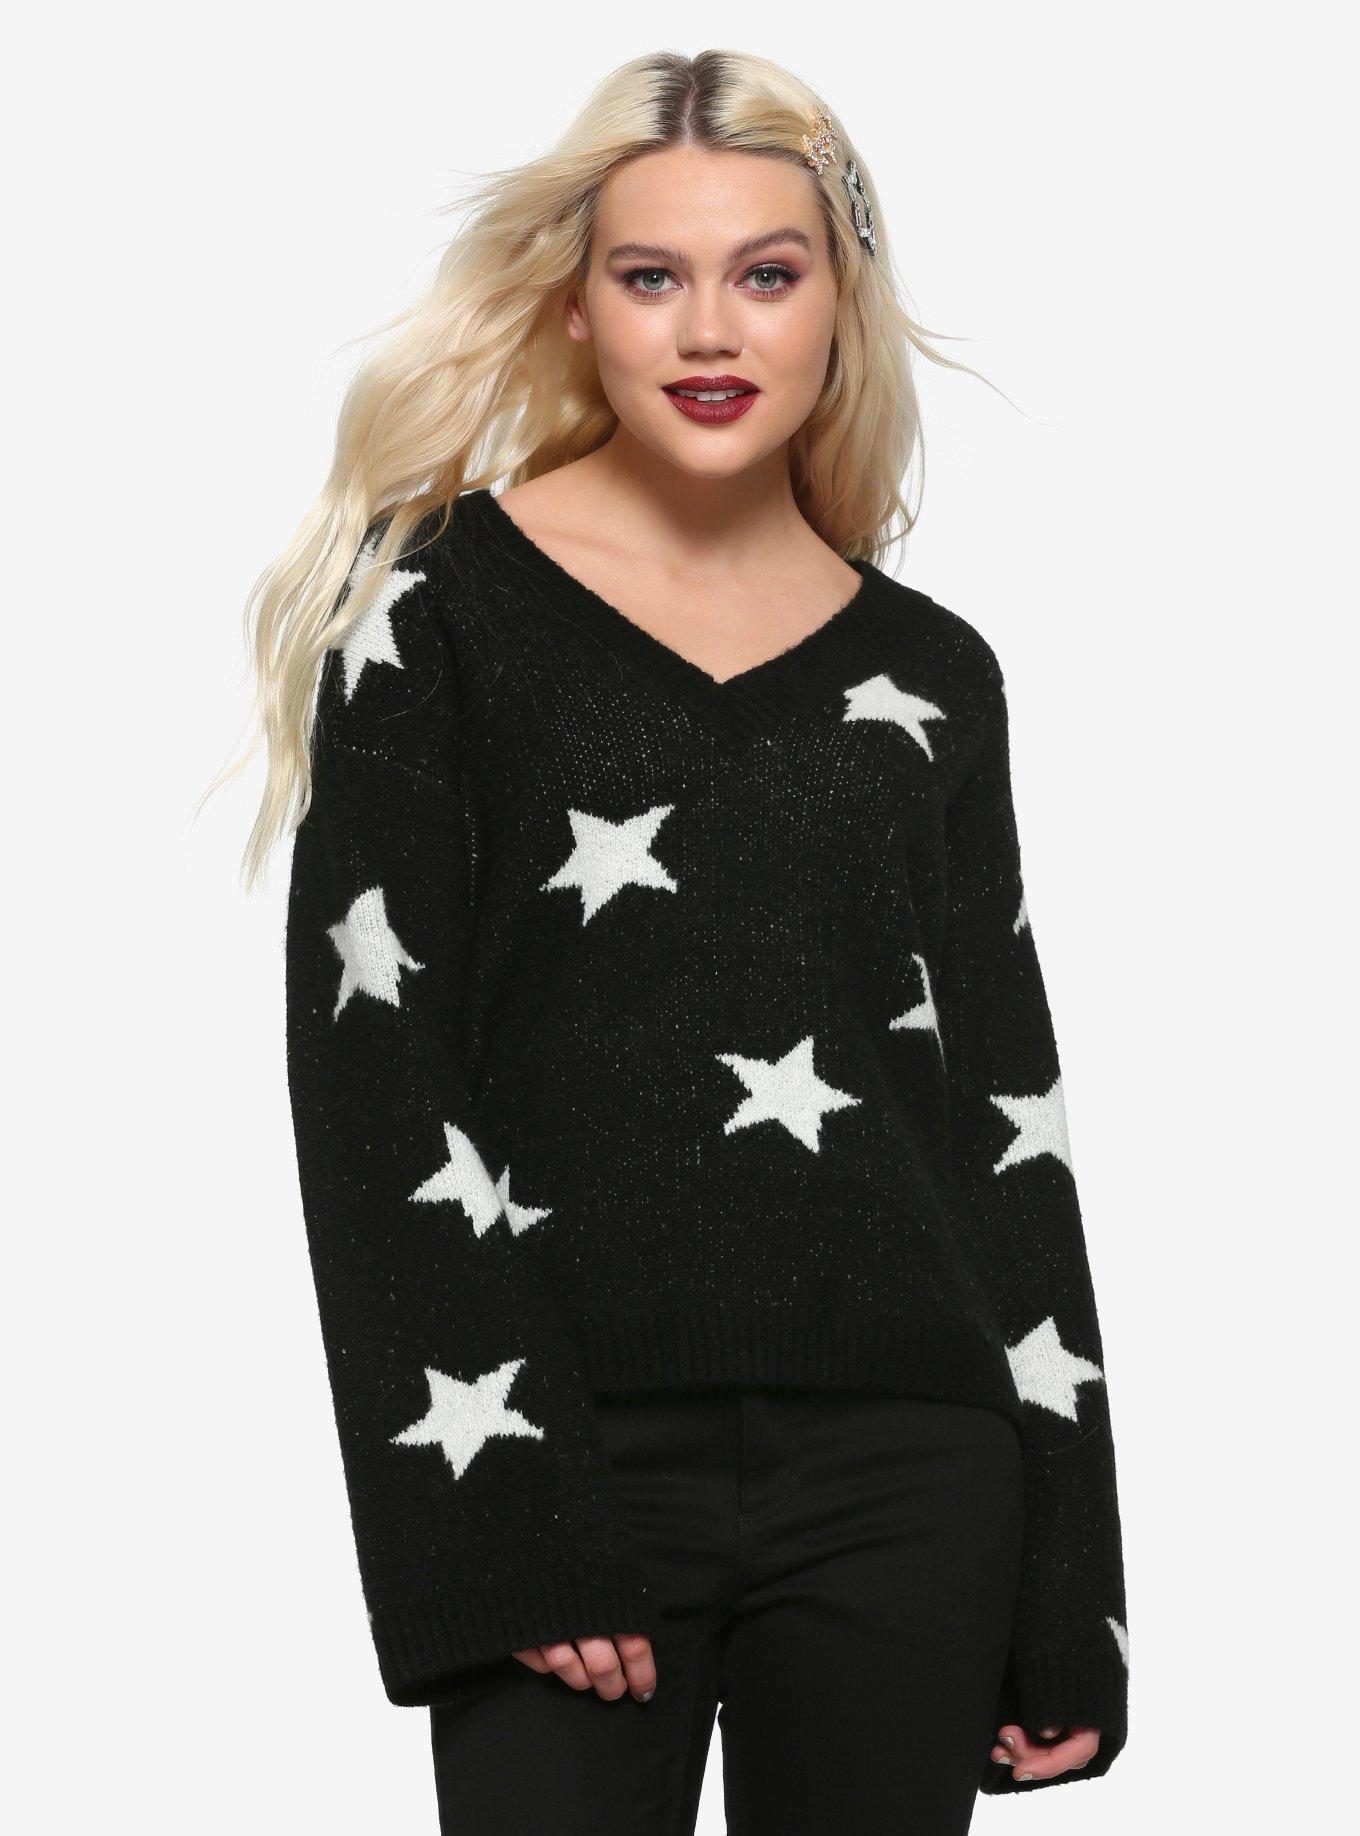 Black & White Star Girls Sweater | Hot Topic